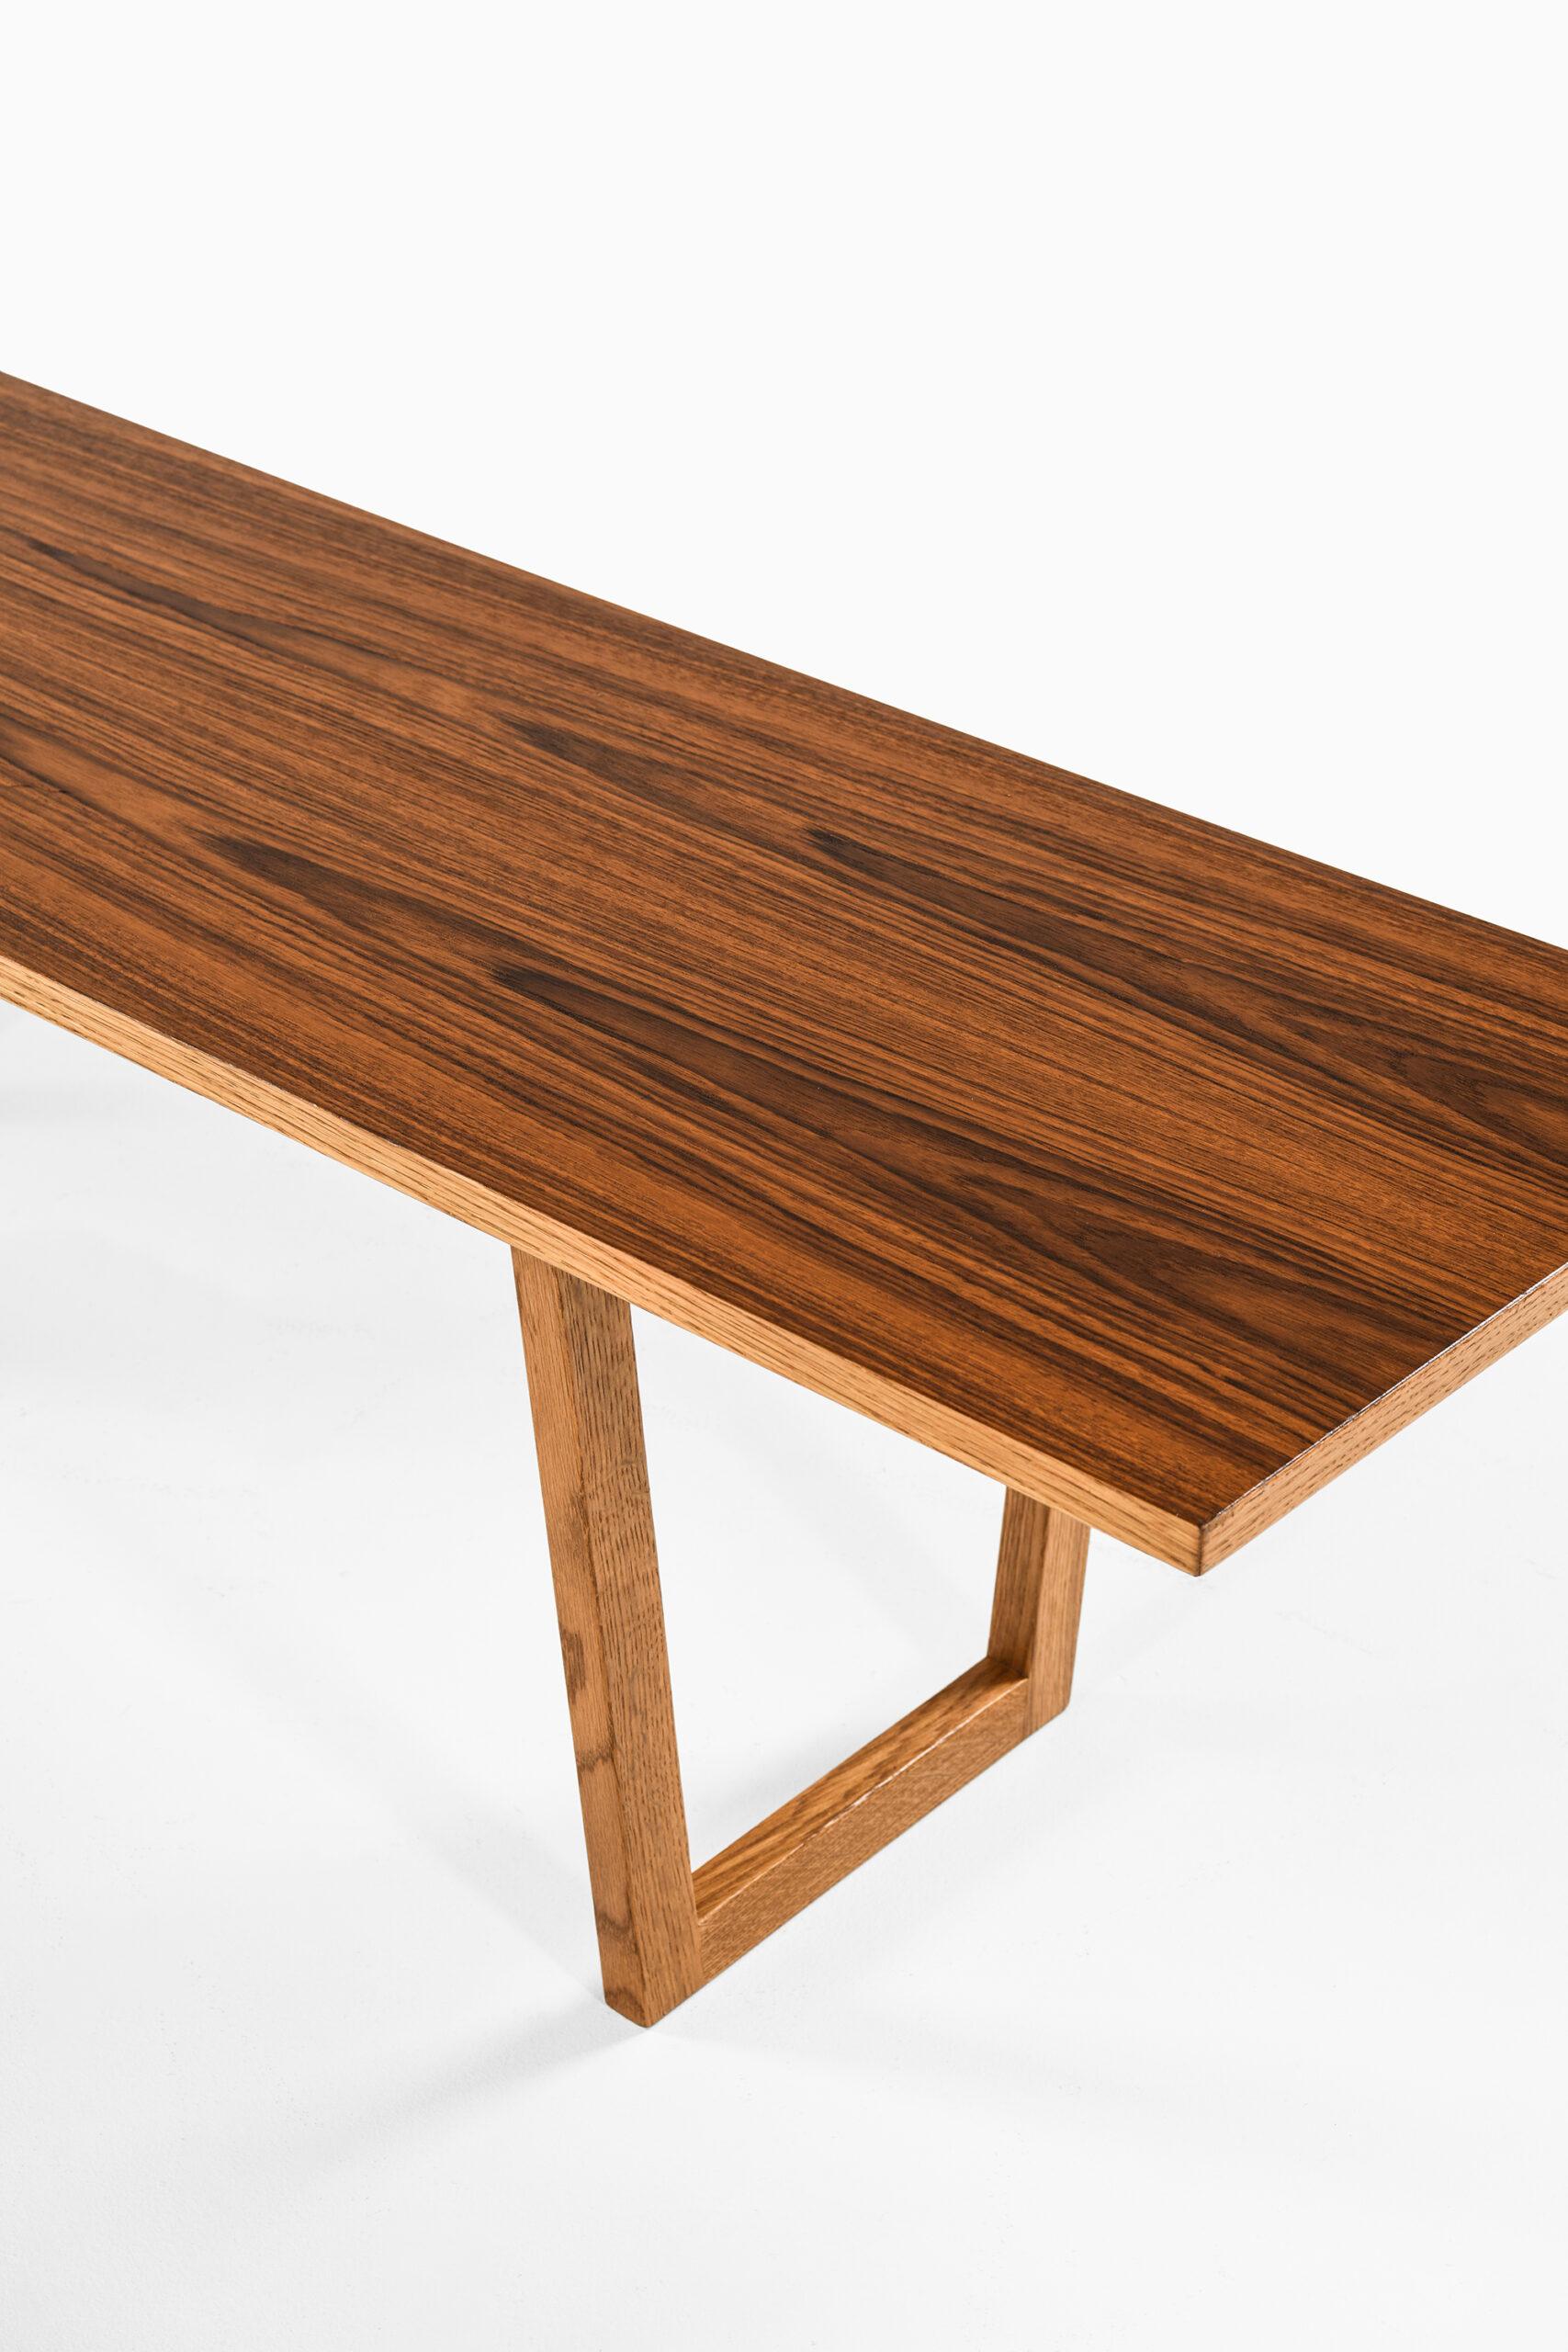 Très rare et longue table d'appoint ou banc conçu par Kurt Østervig. Produit par Jason Møbler au Danemark.